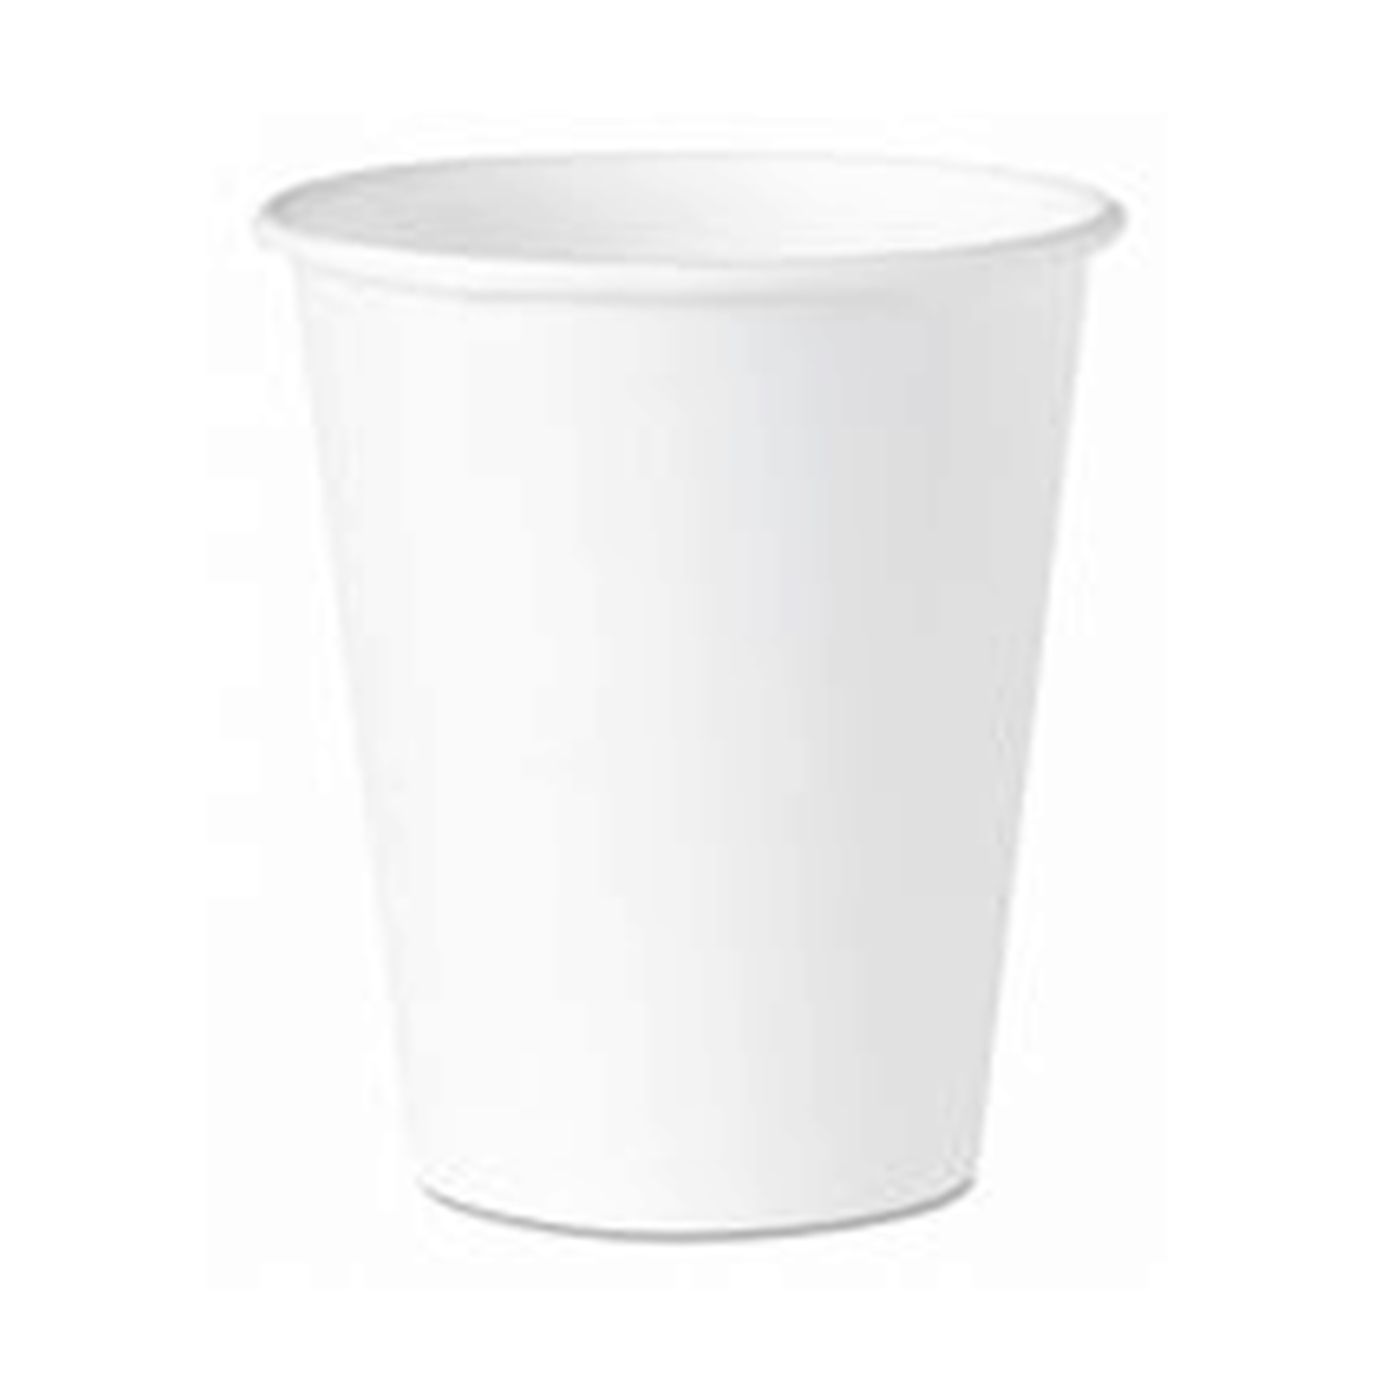 https://distillata.com/wp-content/uploads/2019/10/Flat-Water-Cup.jpg